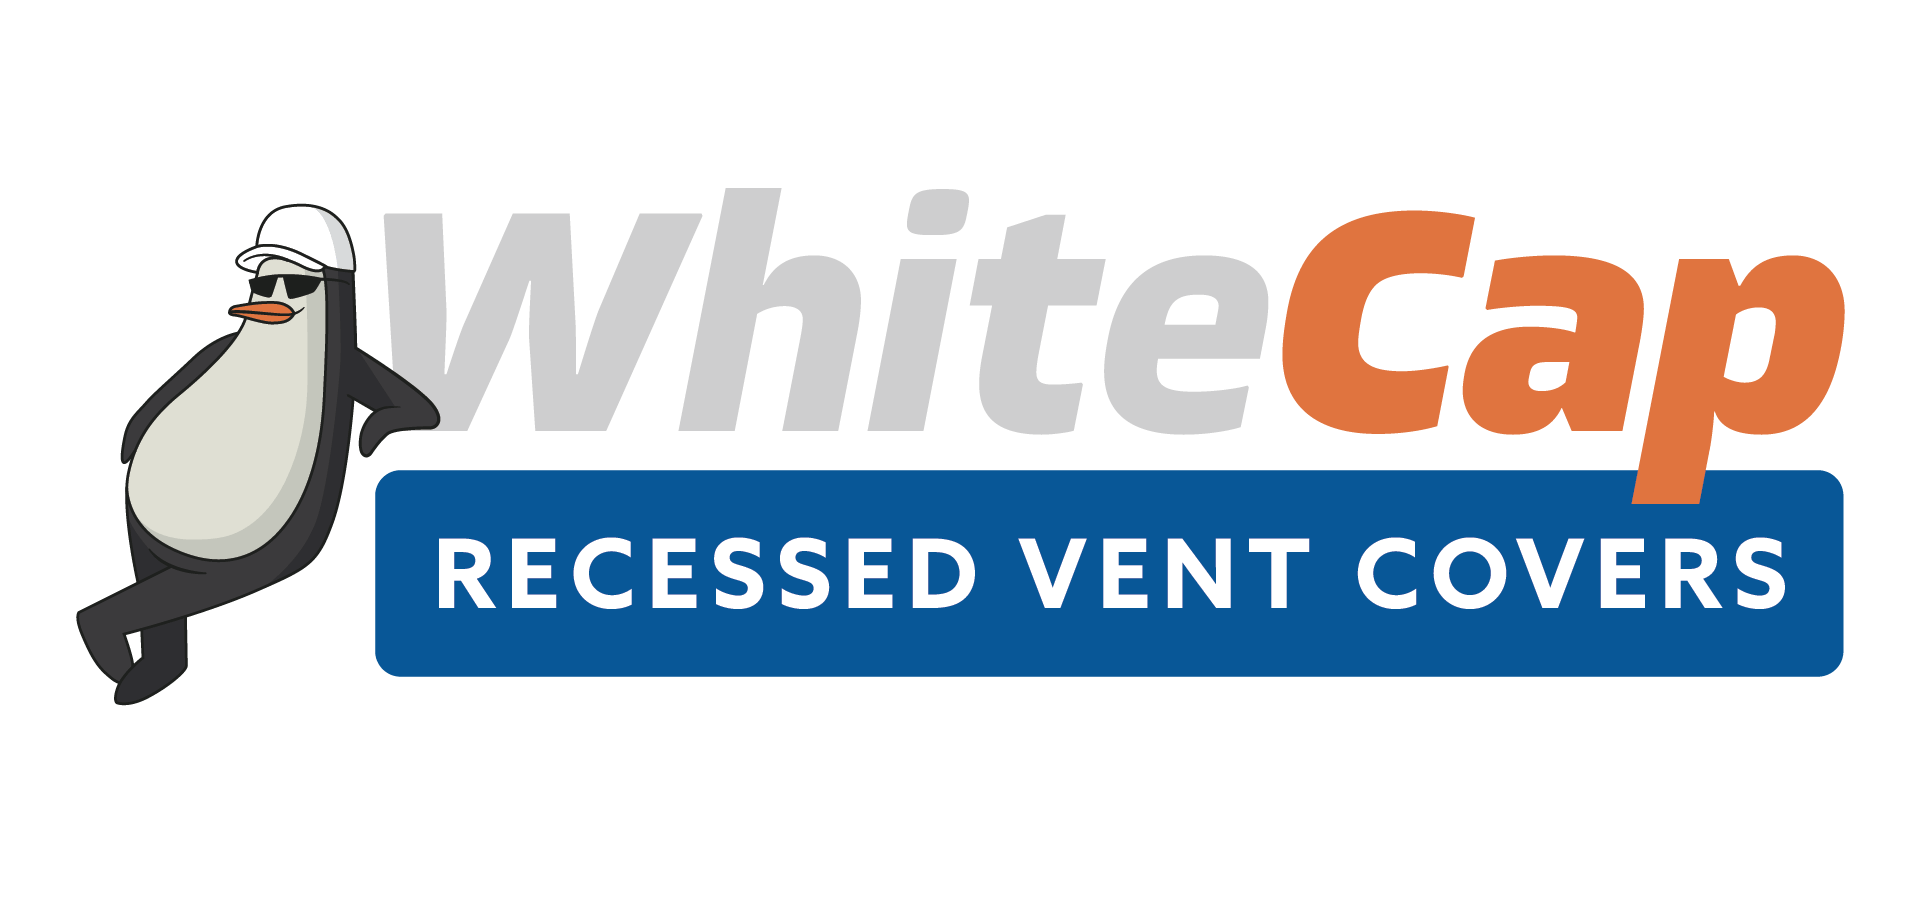 WhiteCap Recessed Vent Covers